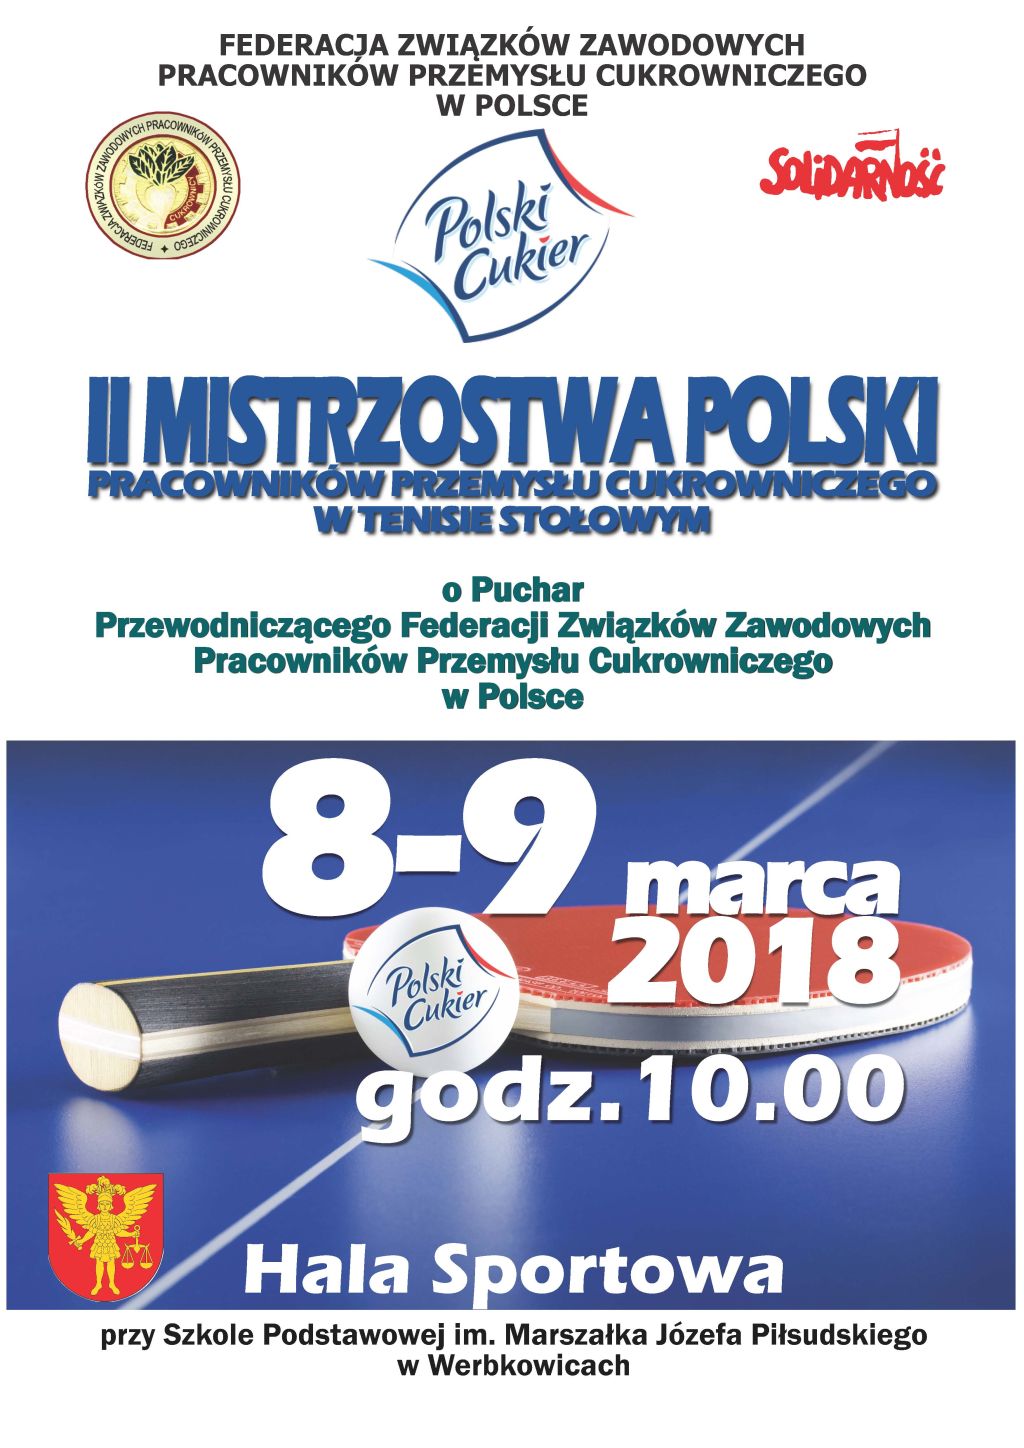 II Mistrzostwa Polski Pracowników Przemysłu Cukrowniczego w Tenisie Stołowym  Werbkowice 8-9 marca 2018 roku.